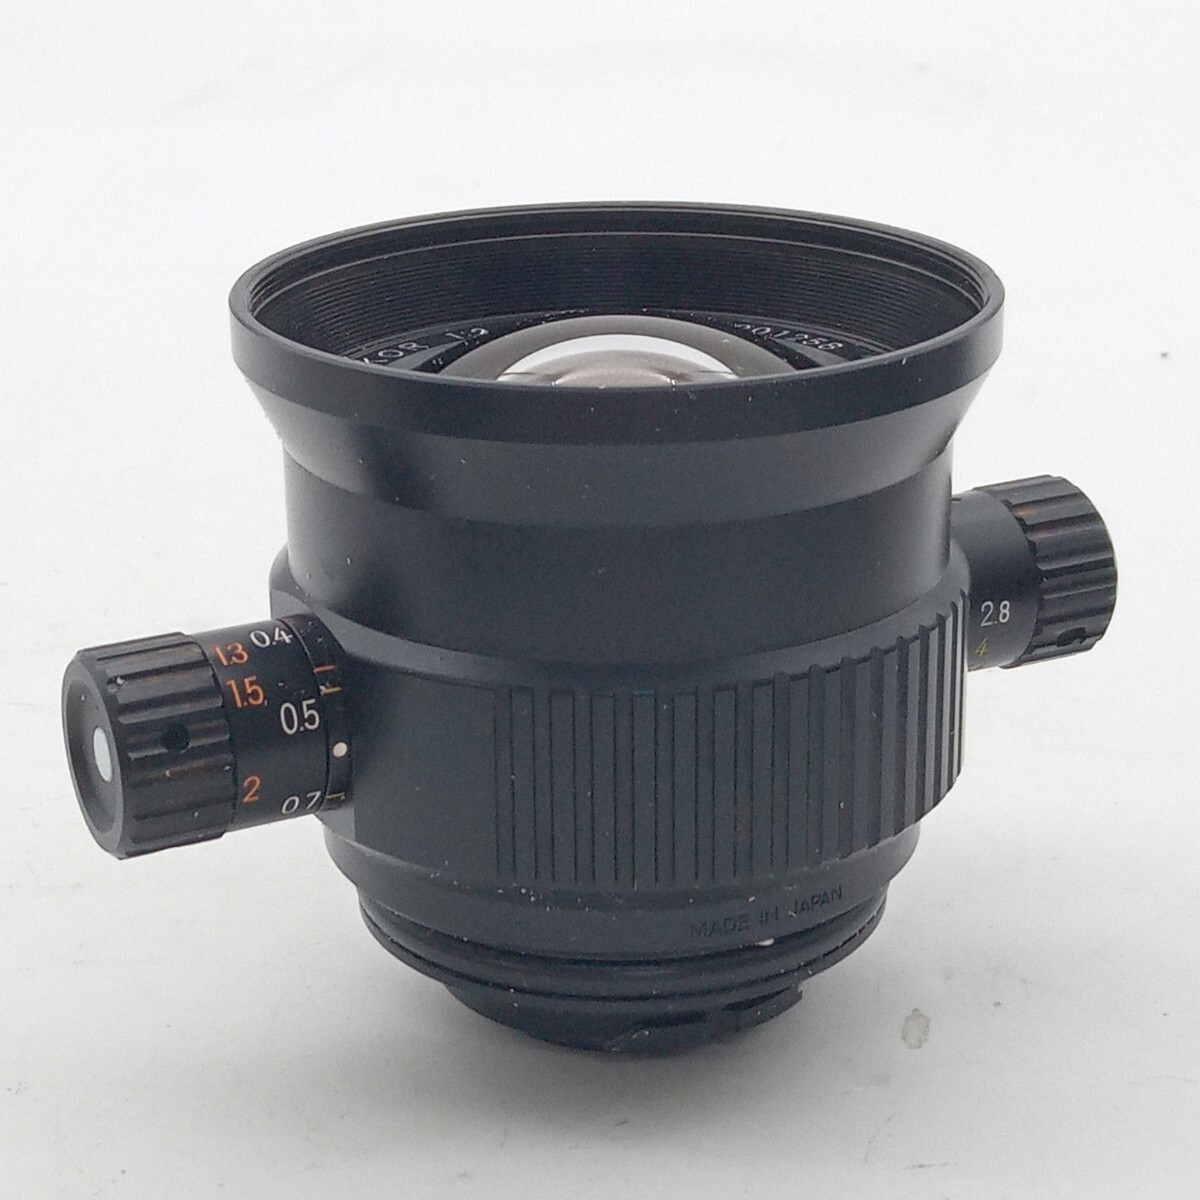 R カメラ レンズ Nikon ニコン NIKKOR カメラレンズ 動作未確認 F=20mm 1:2.8 箱付き 光学機器 _画像3